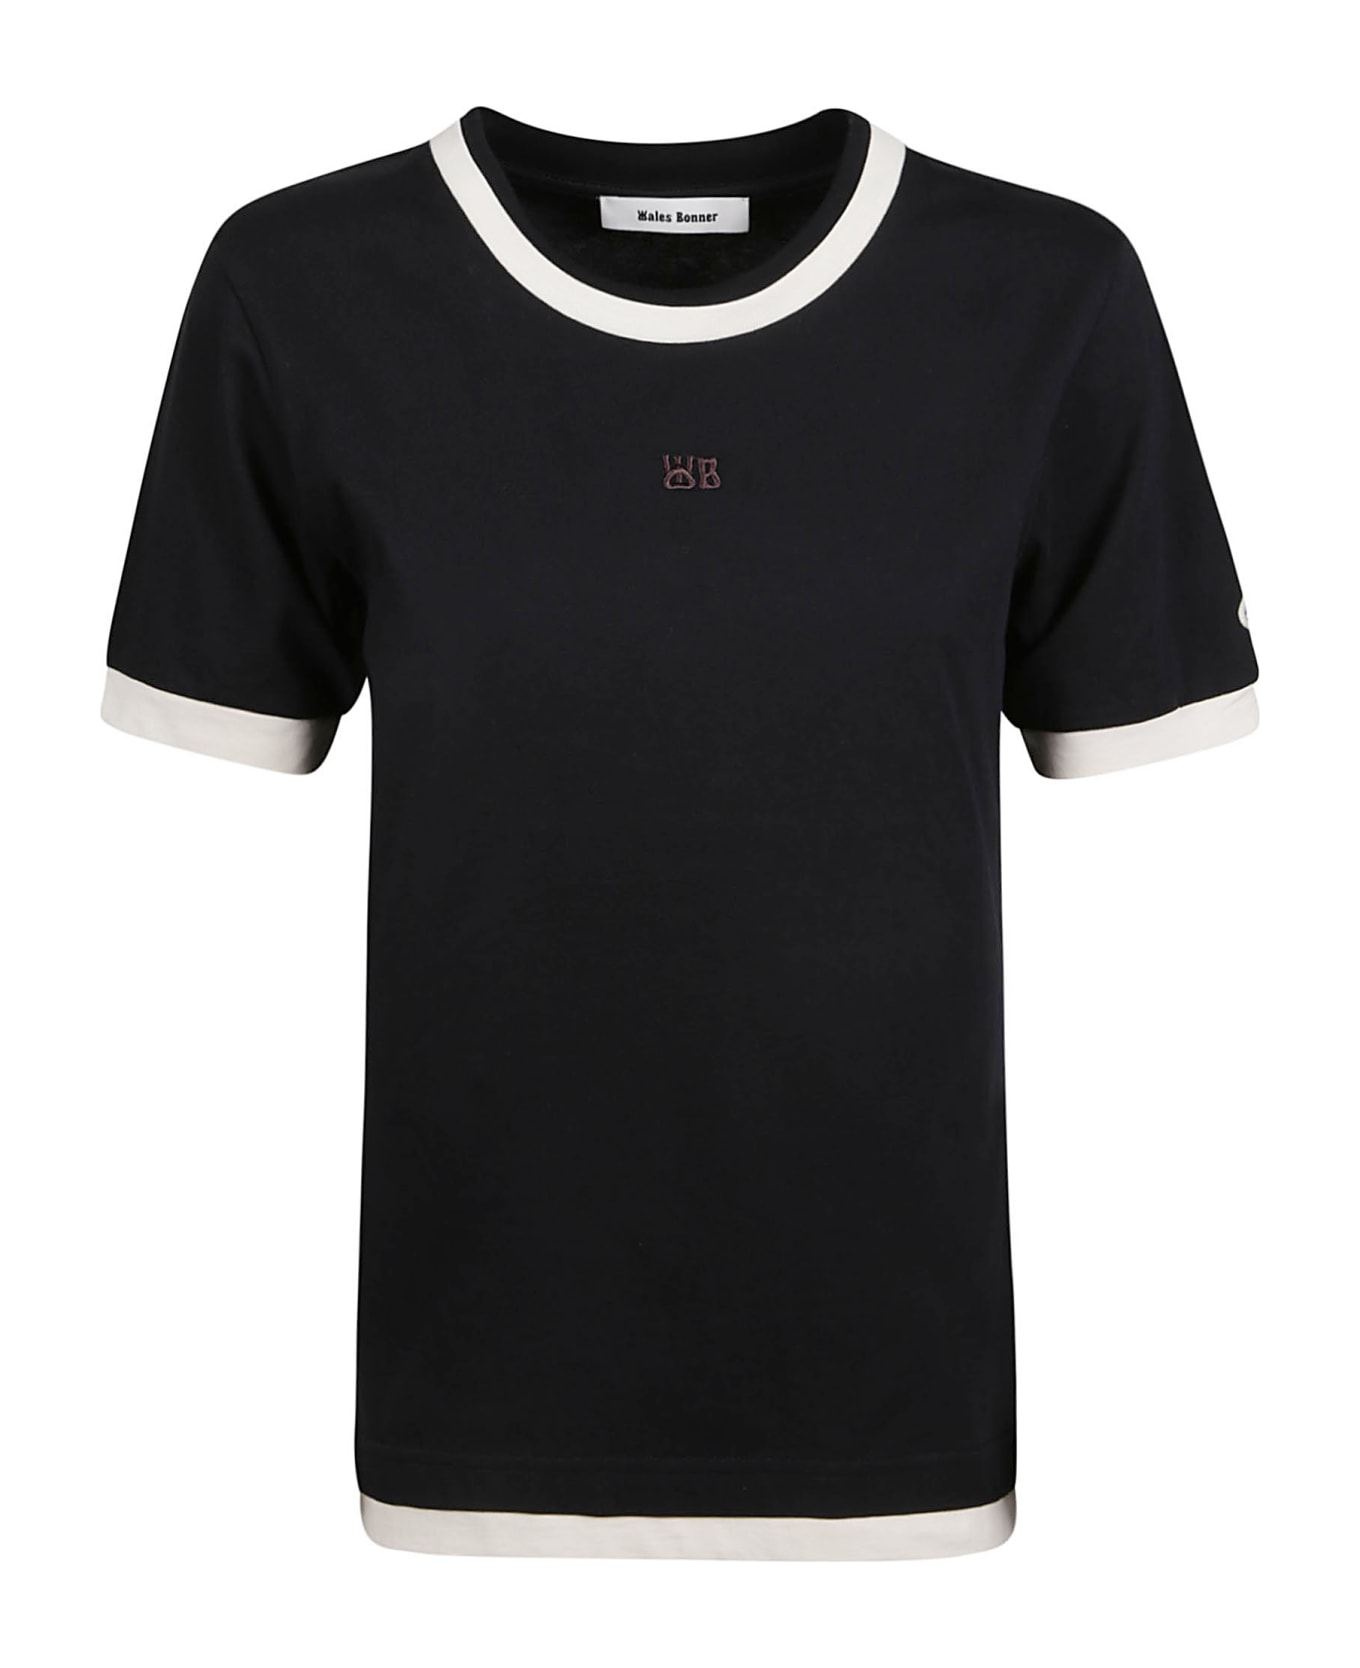 Wales Bonner Plain Horizon T-shirt - Black